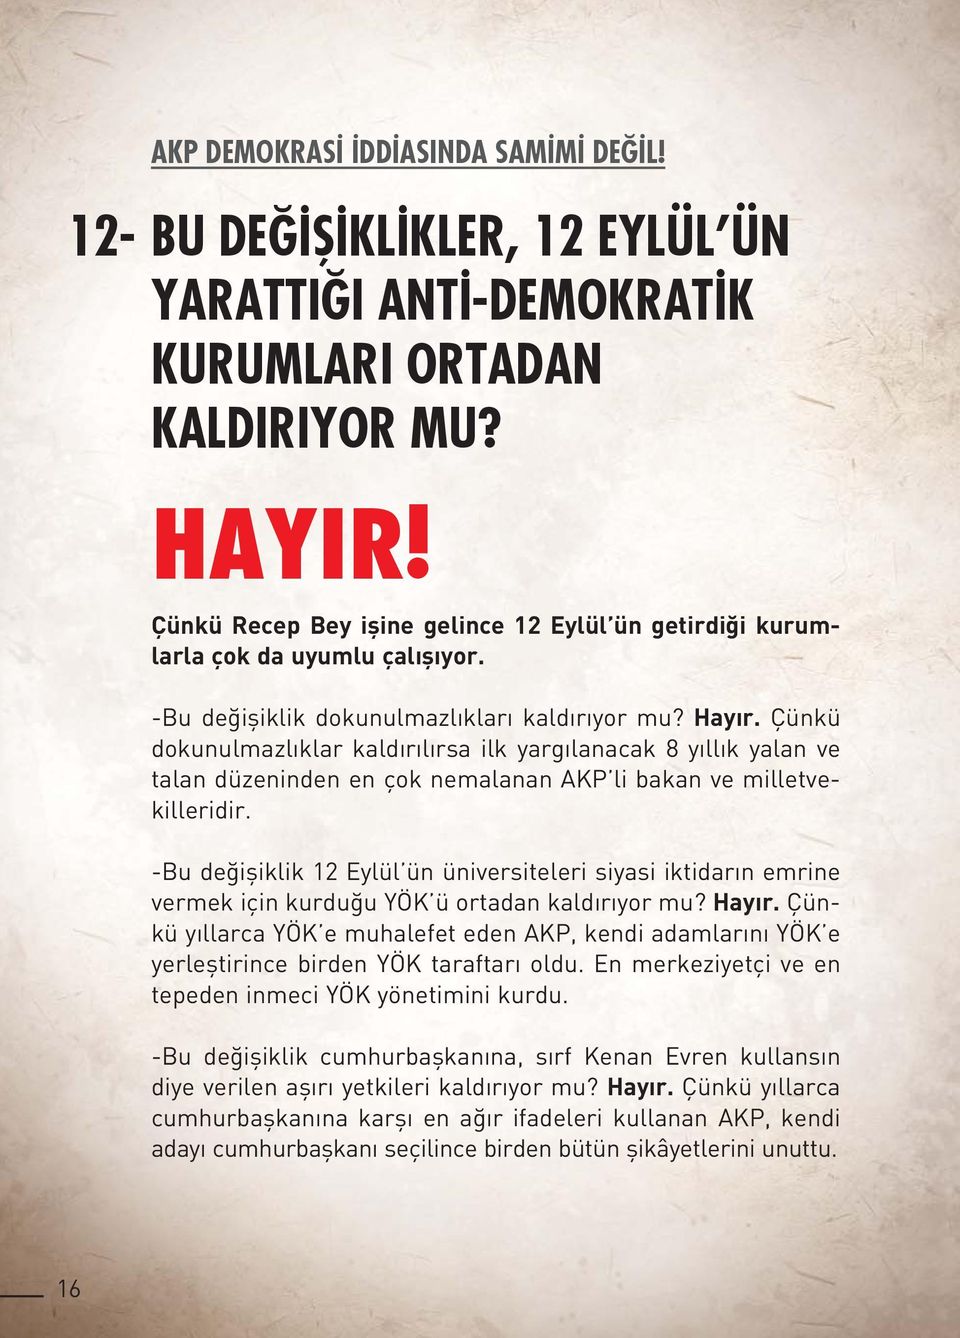 Çünkü dokunulmazlıklar kaldırılırsa ilk yargılanacak 8 yıllık yalan ve talan düzeninden en çok nemalanan AKP li bakan ve milletvekilleridir.